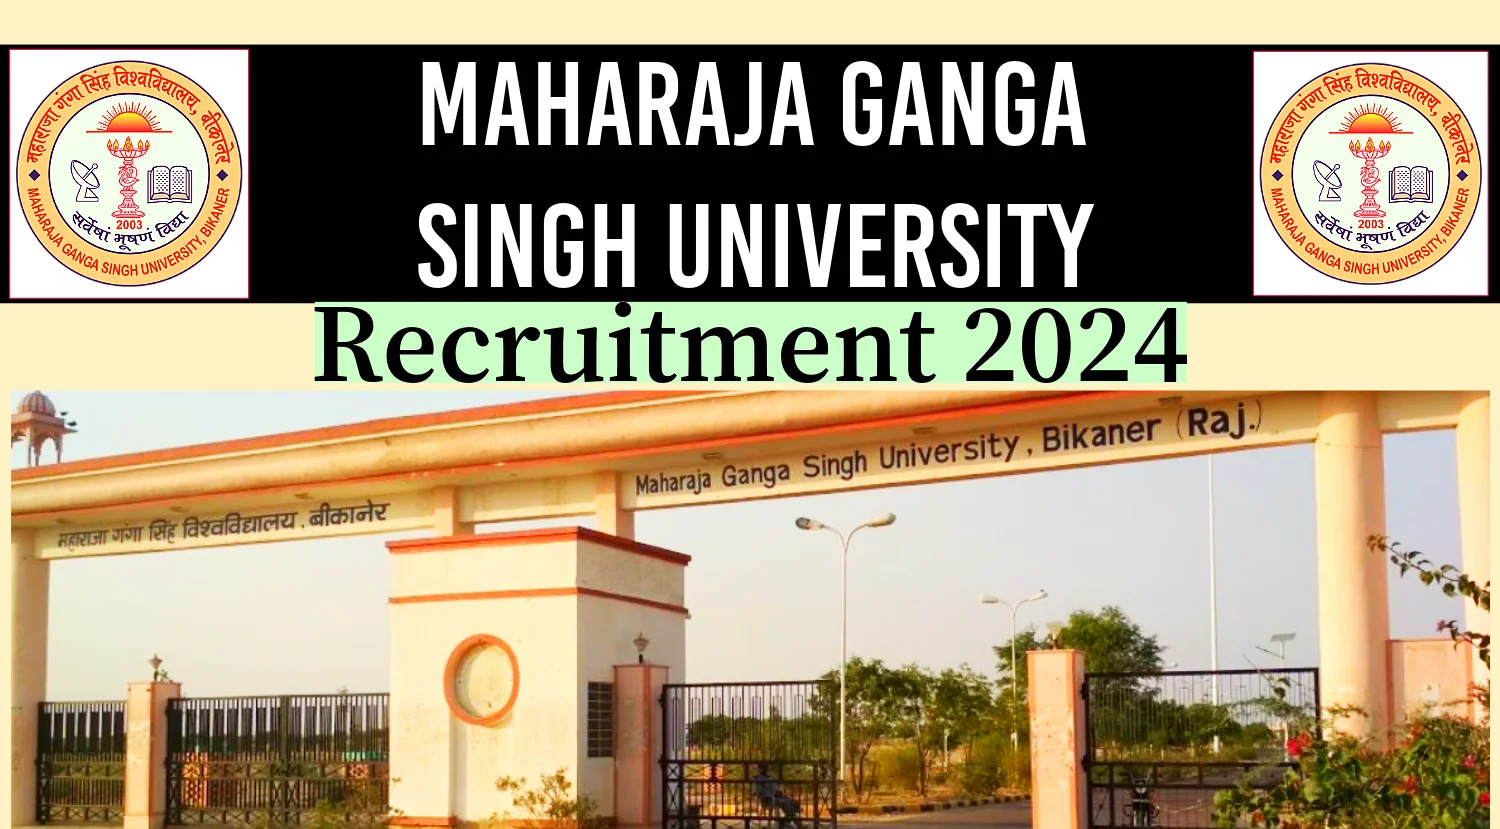 Maharaja Ganga Singh University Faculty Recruitment